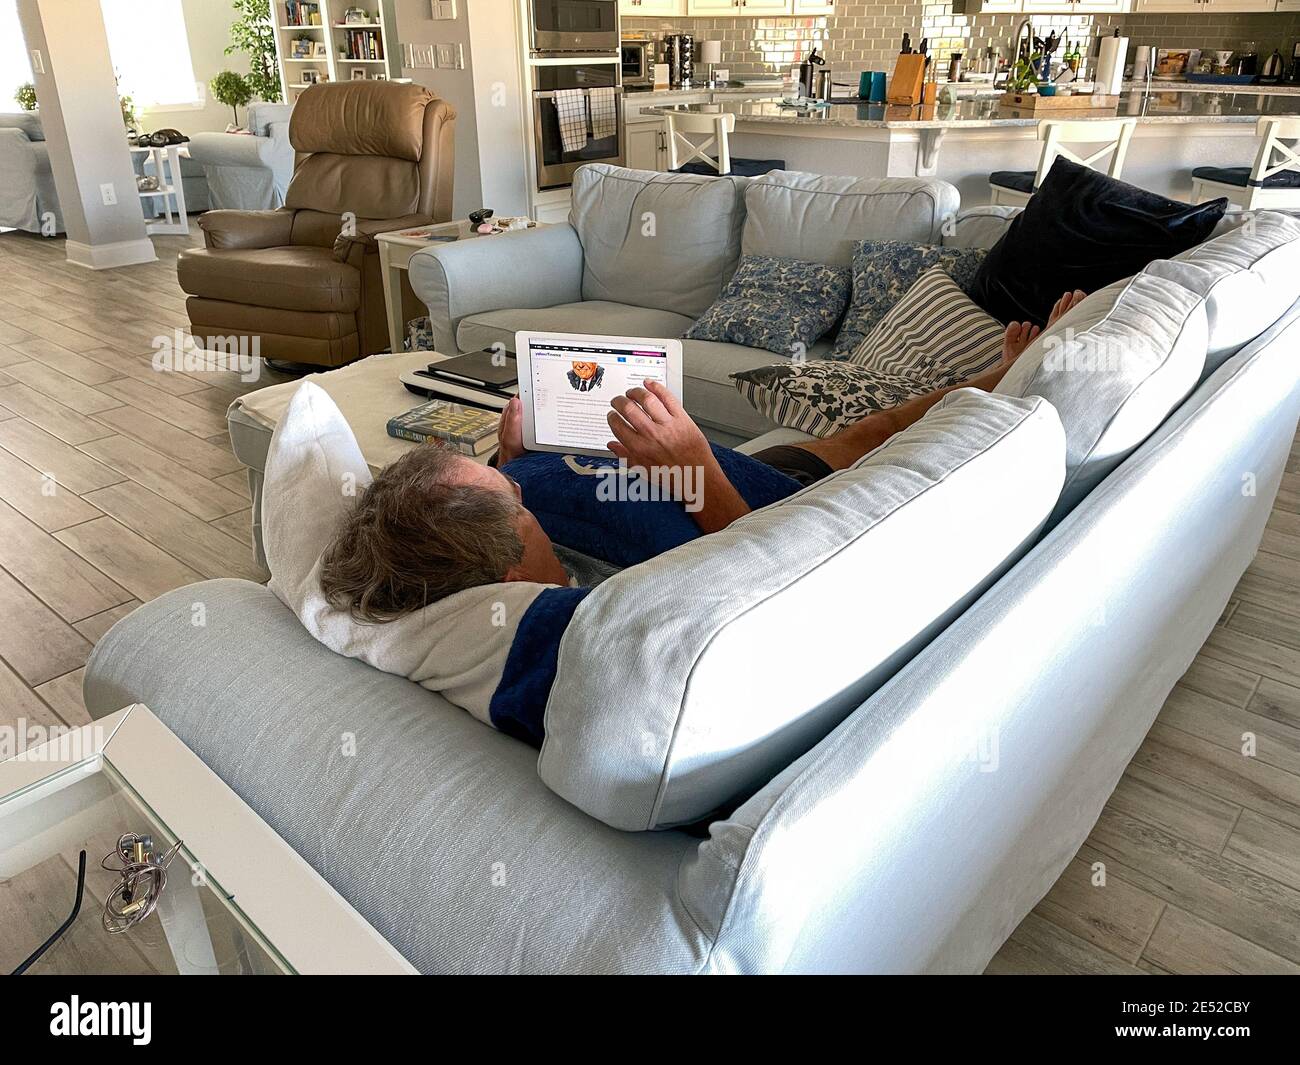 Orlando, FL USA - 25. Januar 2021: Ein älterer Mann liest die Nachrichten auf seinem iPad, während er auf der Couch liegt. Stockfoto